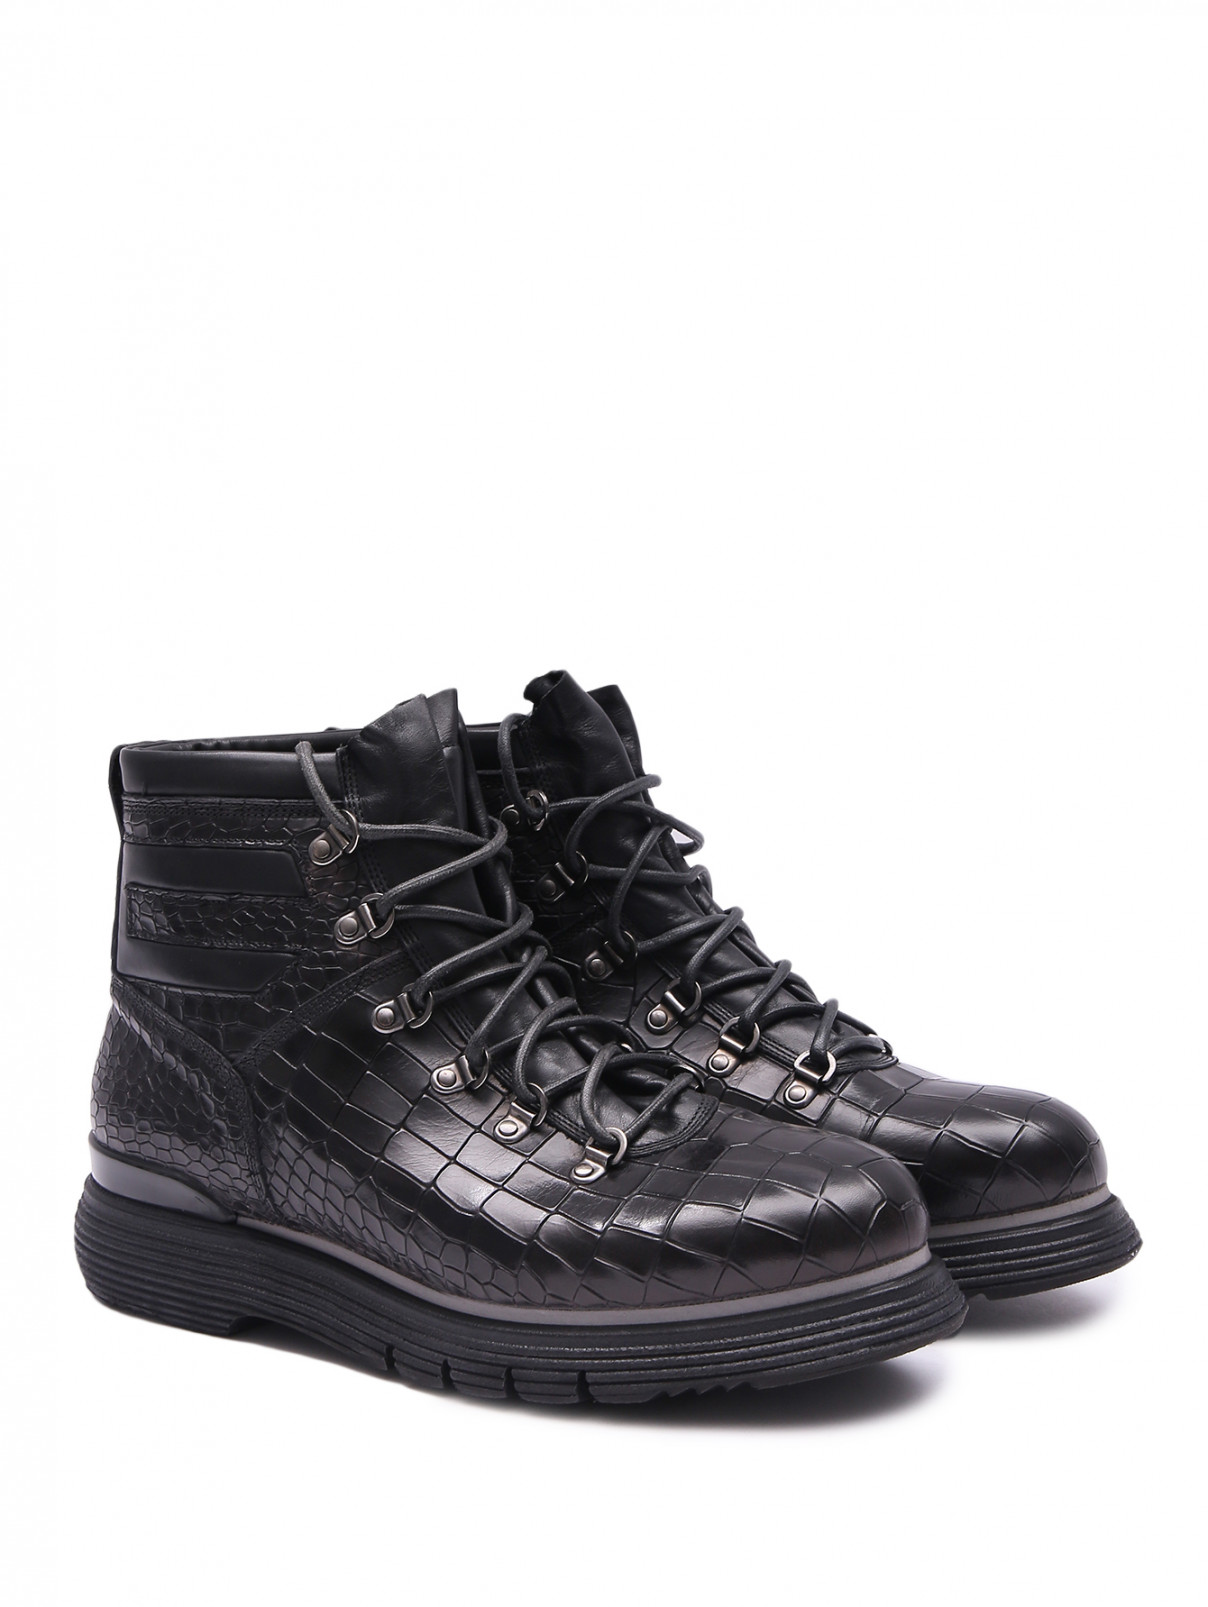 Ботинки из фактурной кожи на шнурках Franceschetti  –  Общий вид  – Цвет:  Черный